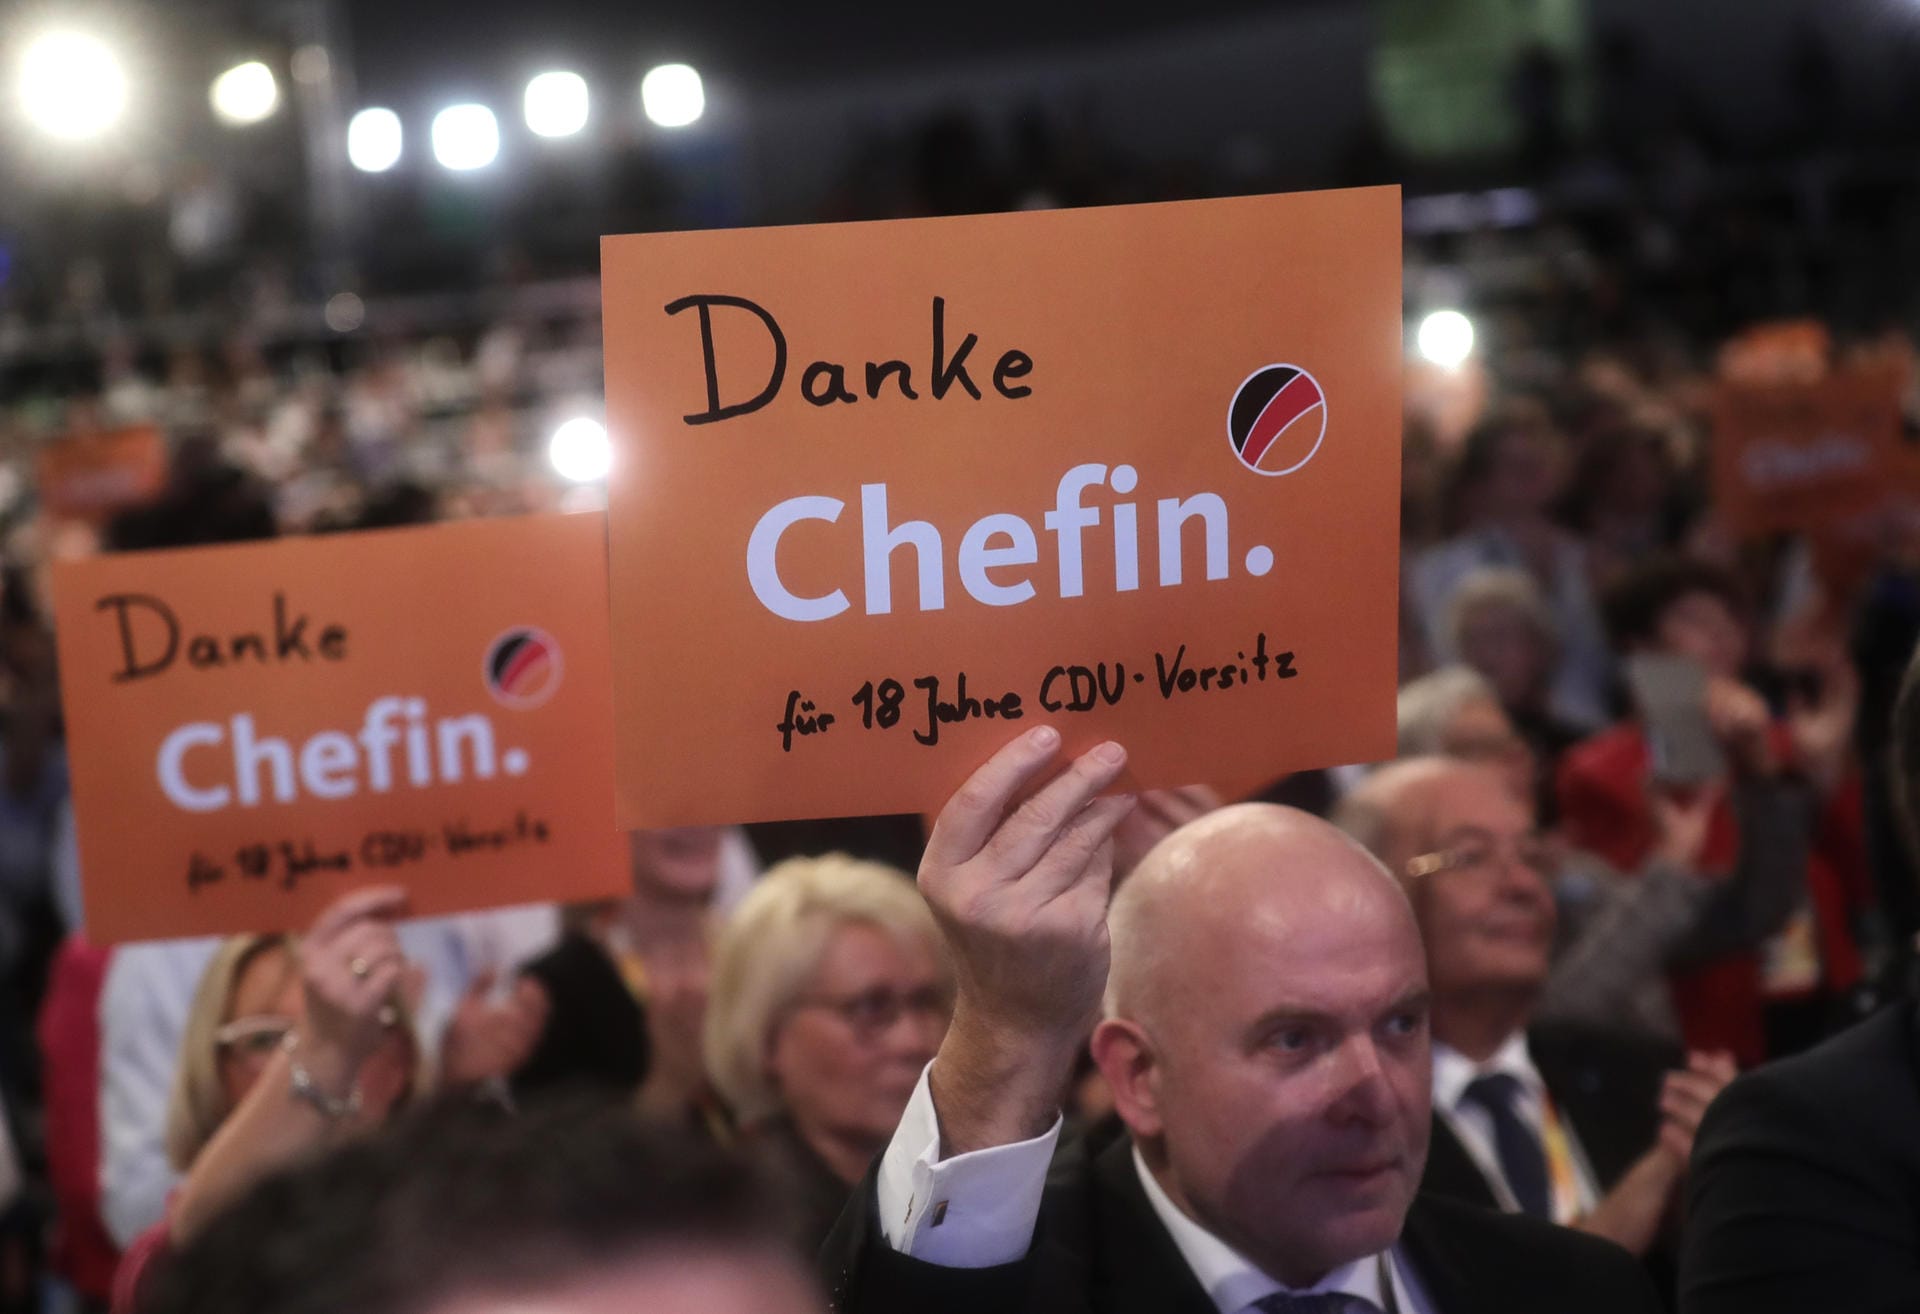 Dank an die "Chefin": Delegierte verabschieden Angela Merkel beim Parteitag in Hamburg.